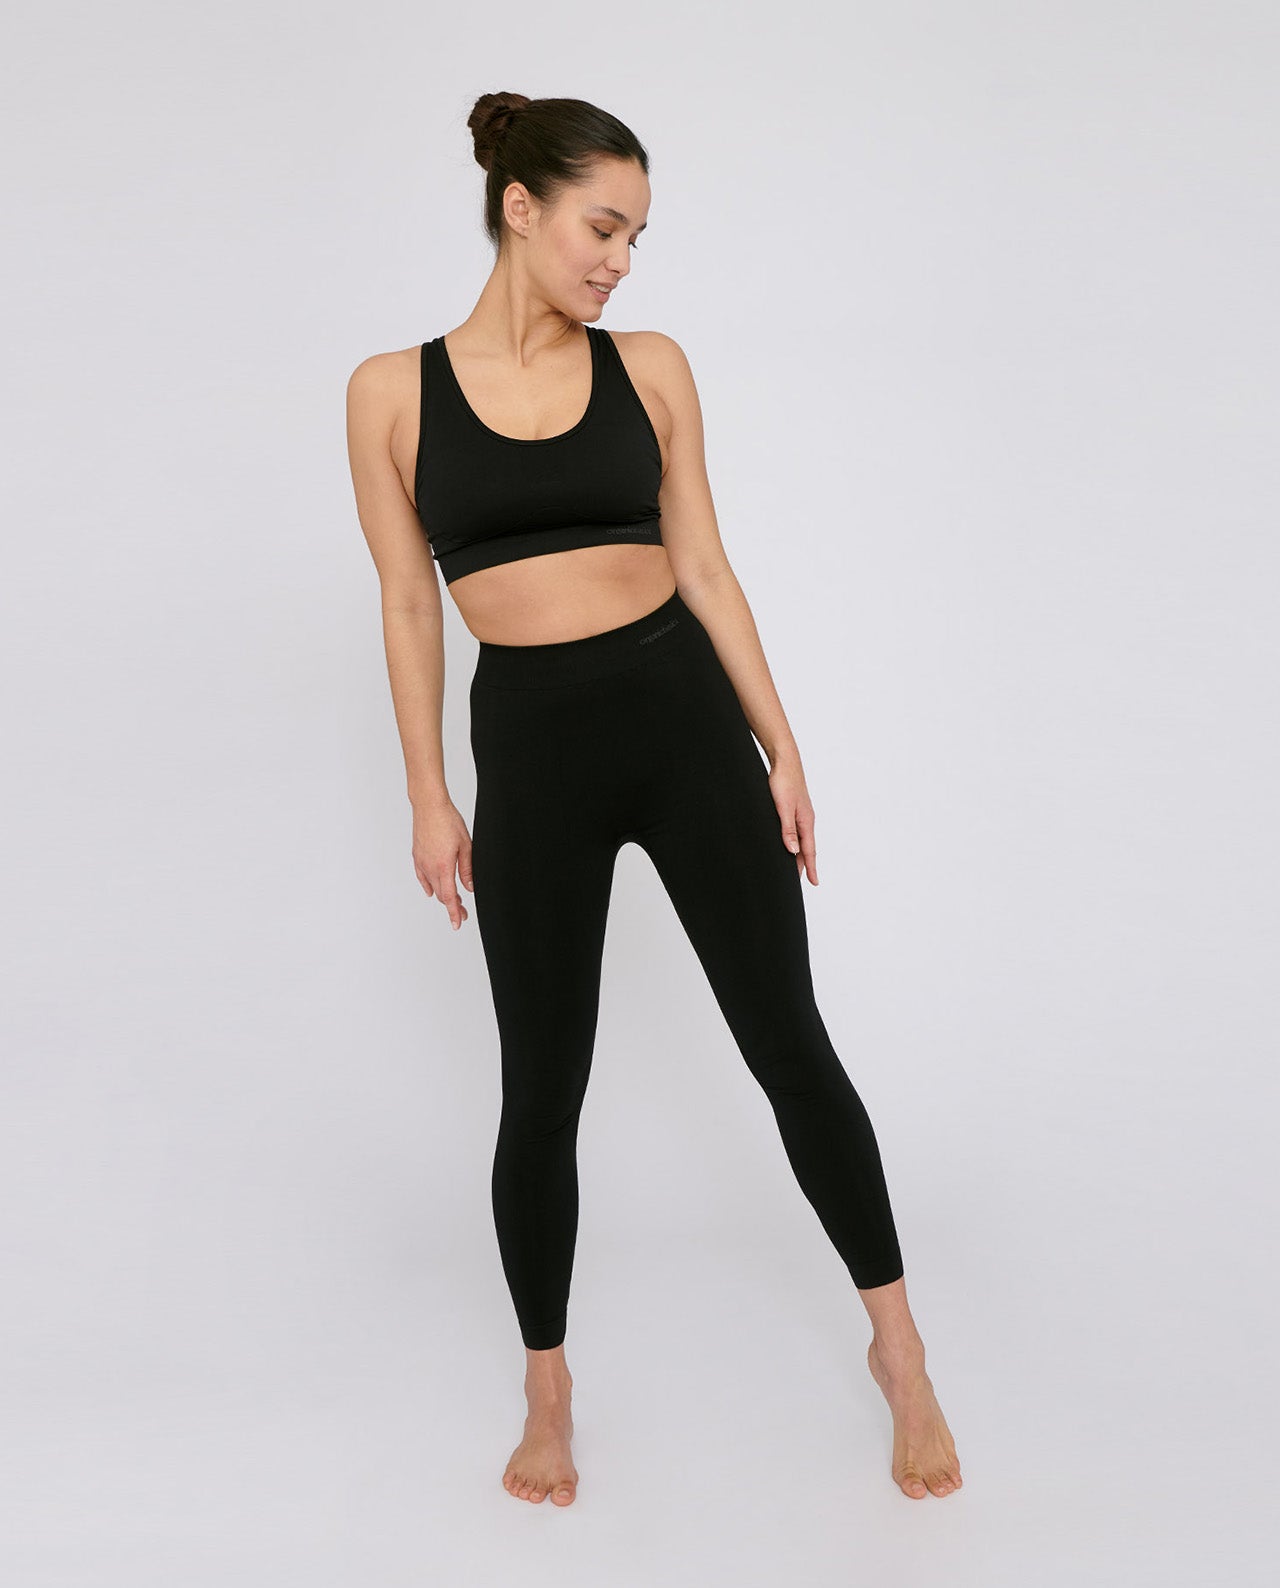 http://marche-commun.com/cdn/shop/products/marche-commun-organic-basics-femme-active-legging-yoga-sport-ethique-noir-1.jpg?v=1665224396